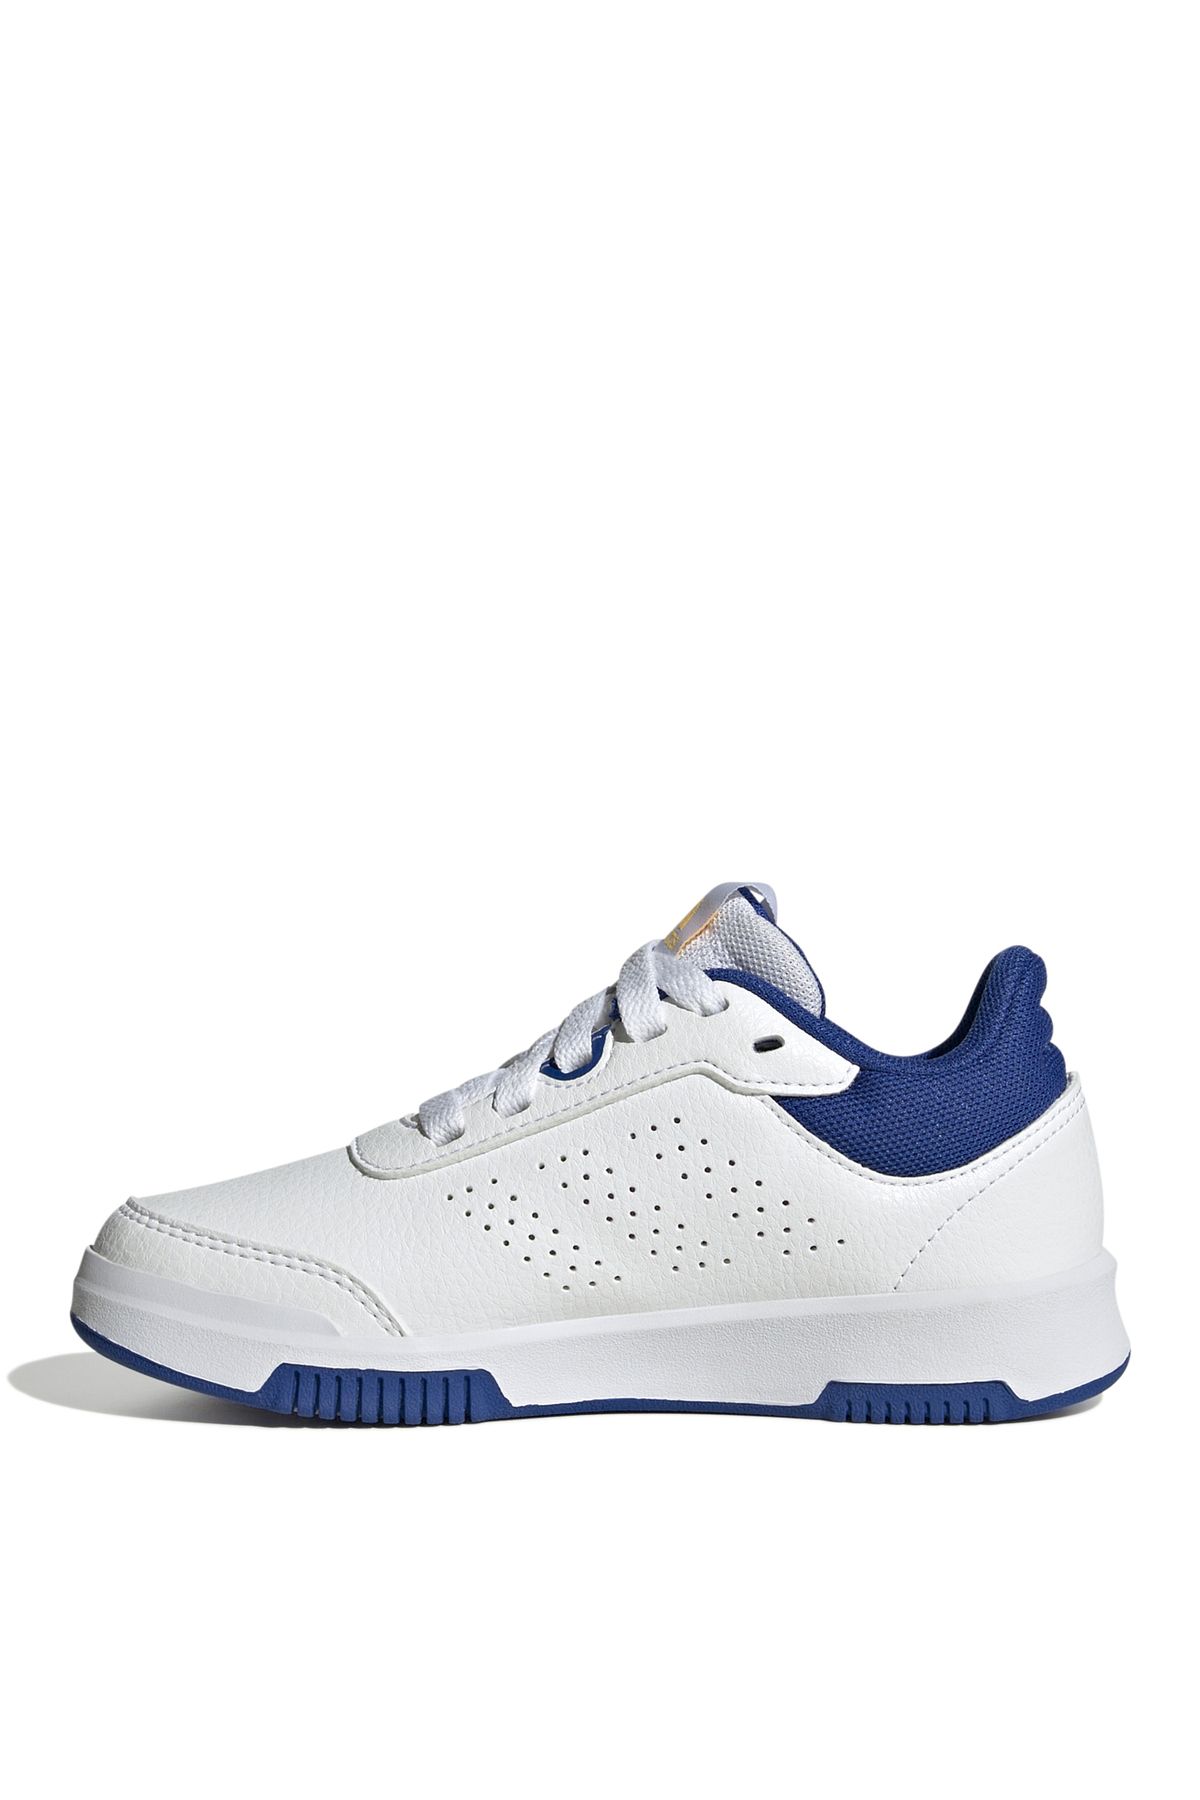 adidas Beyaz Erkek Çocuk Yürüyüş Ayakkabısı IF8669-Tensaur Sport 2.0 K